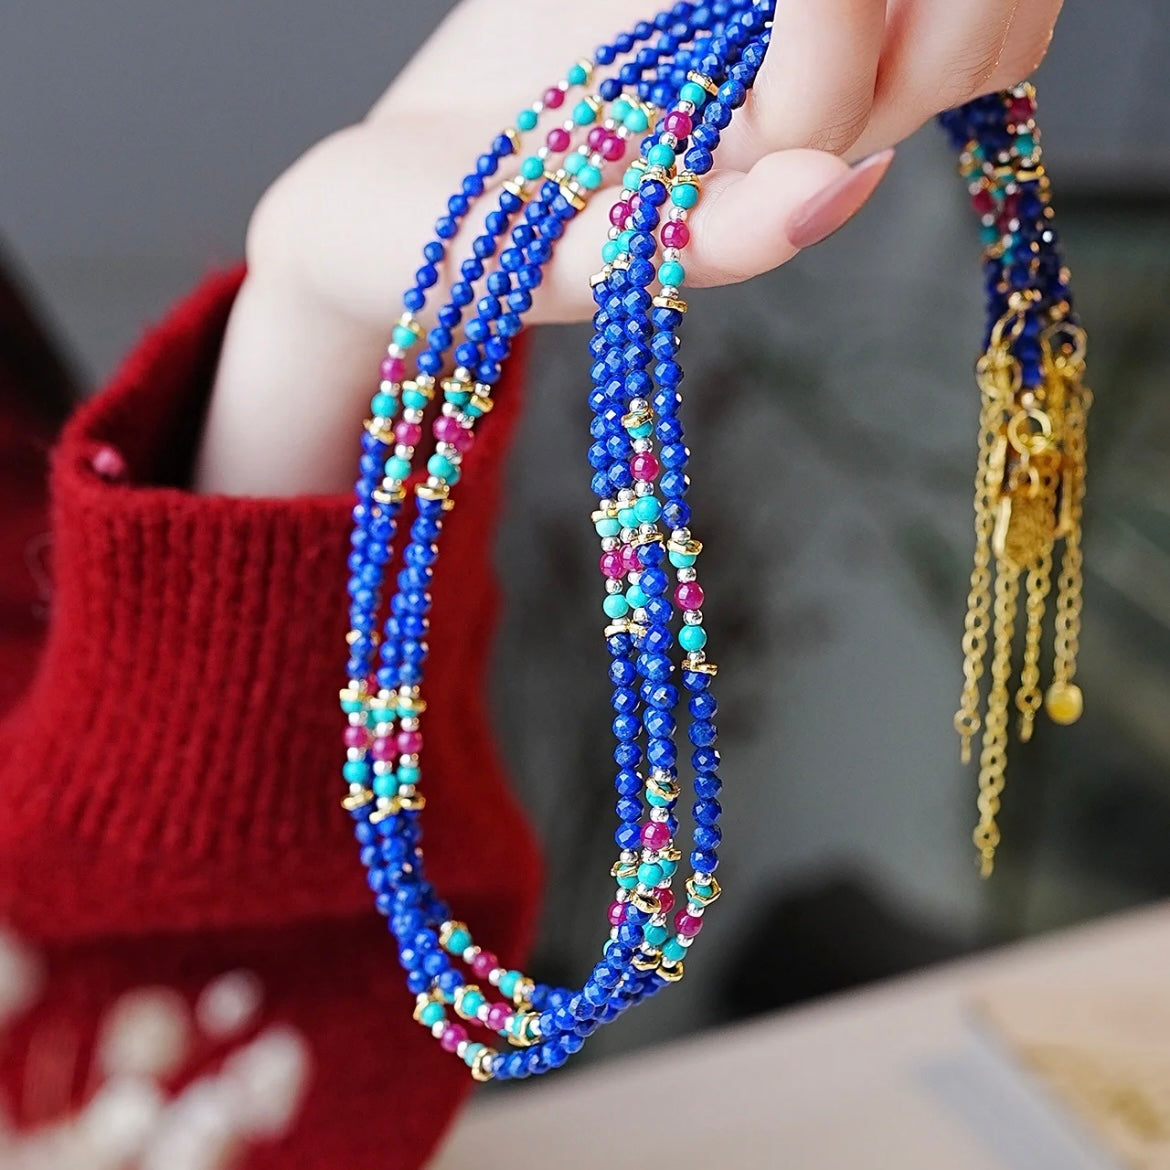 Chinese style lapis lazuli beaded necklace.